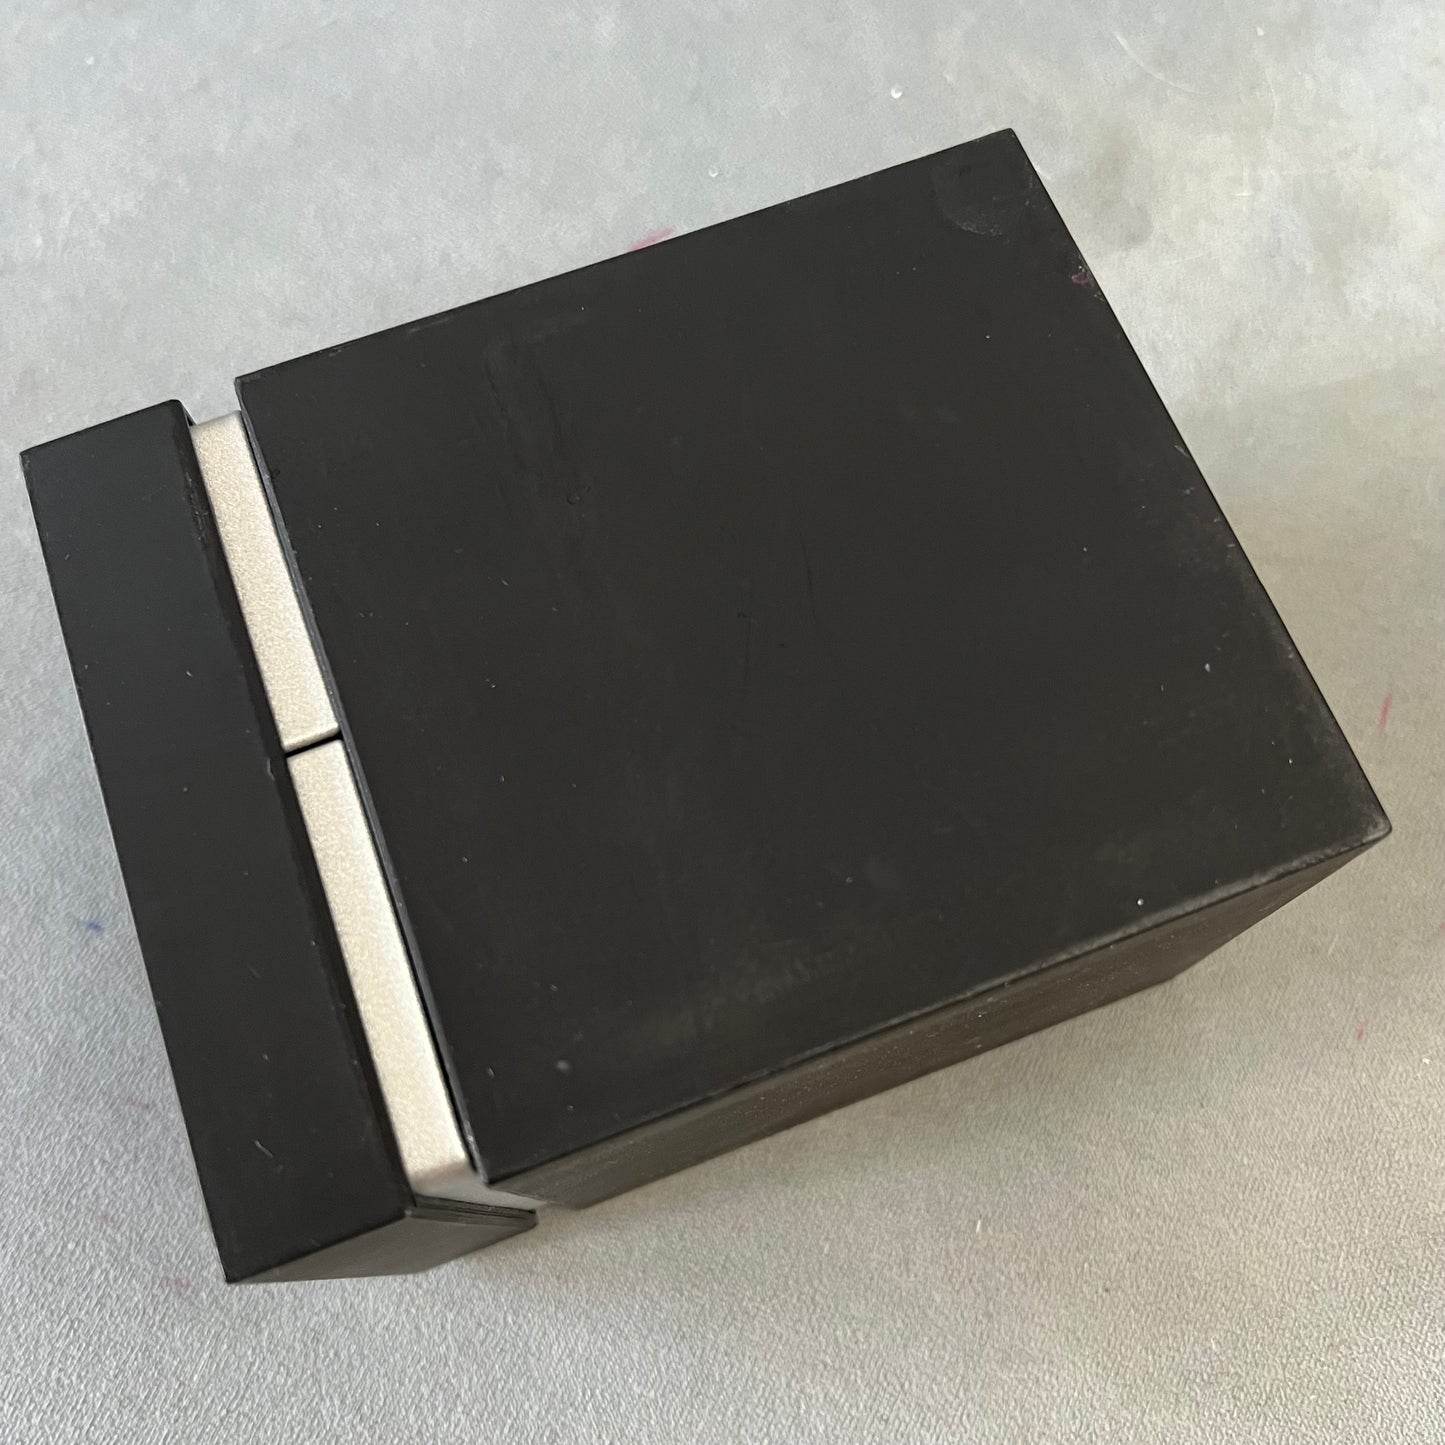 CITIZEN Black Box 5.10x3.90x3.5 inches